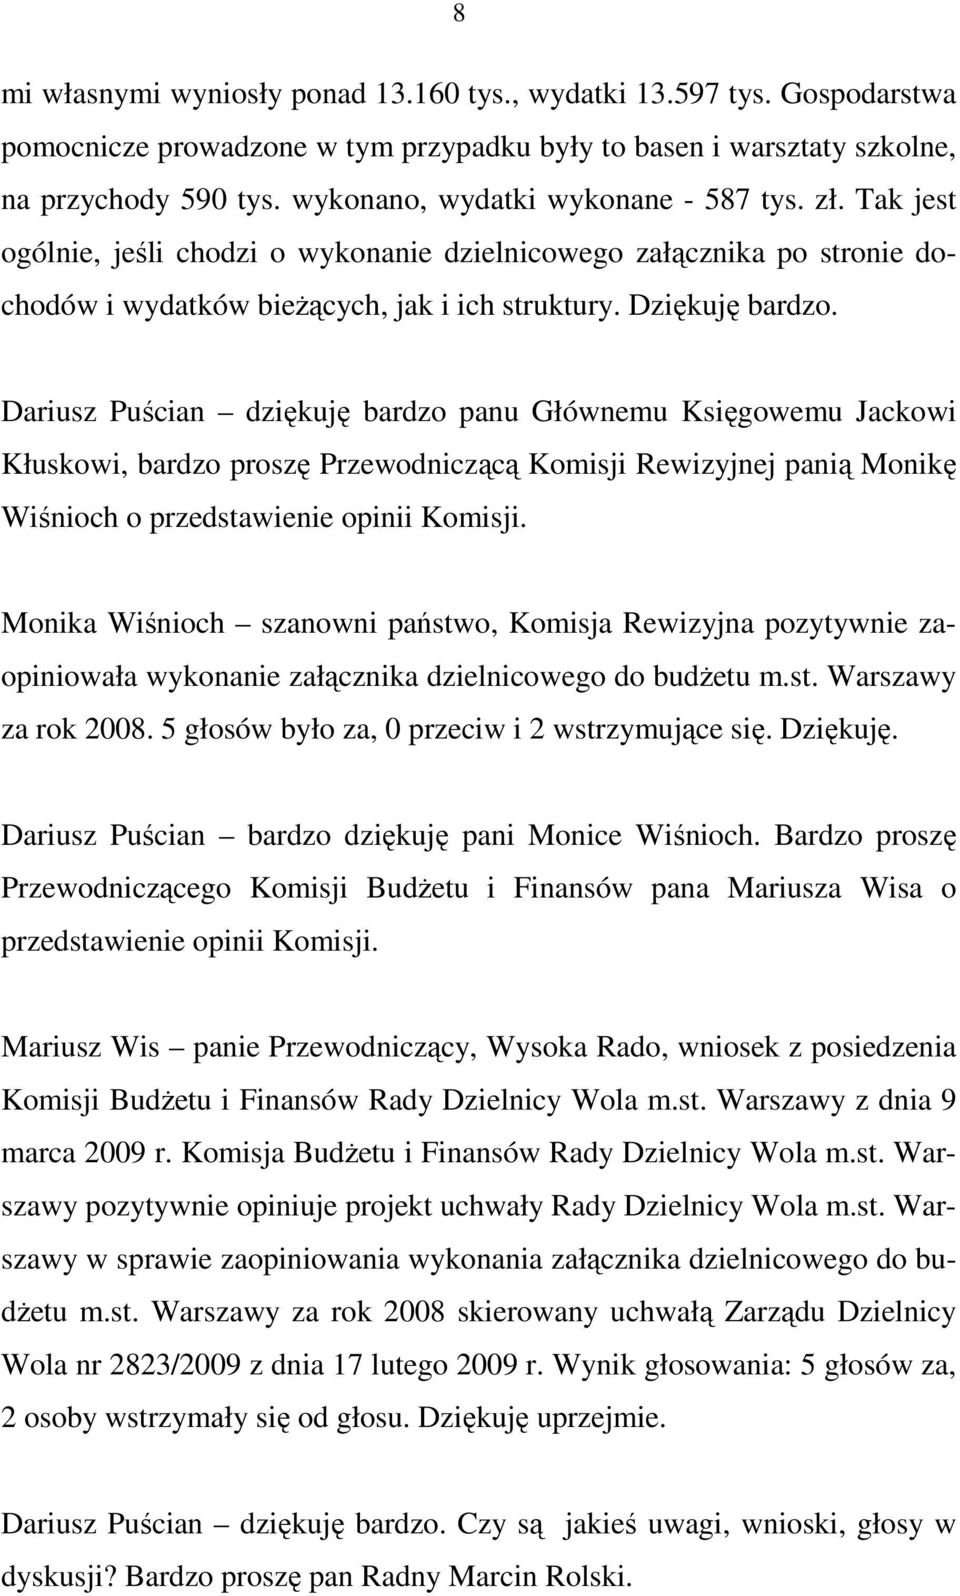 Dariusz Puścian dziękuję bardzo panu Głównemu Księgowemu Jackowi Kłuskowi, bardzo proszę Przewodniczącą Komisji Rewizyjnej panią Monikę Wiśnioch o przedstawienie opinii Komisji.